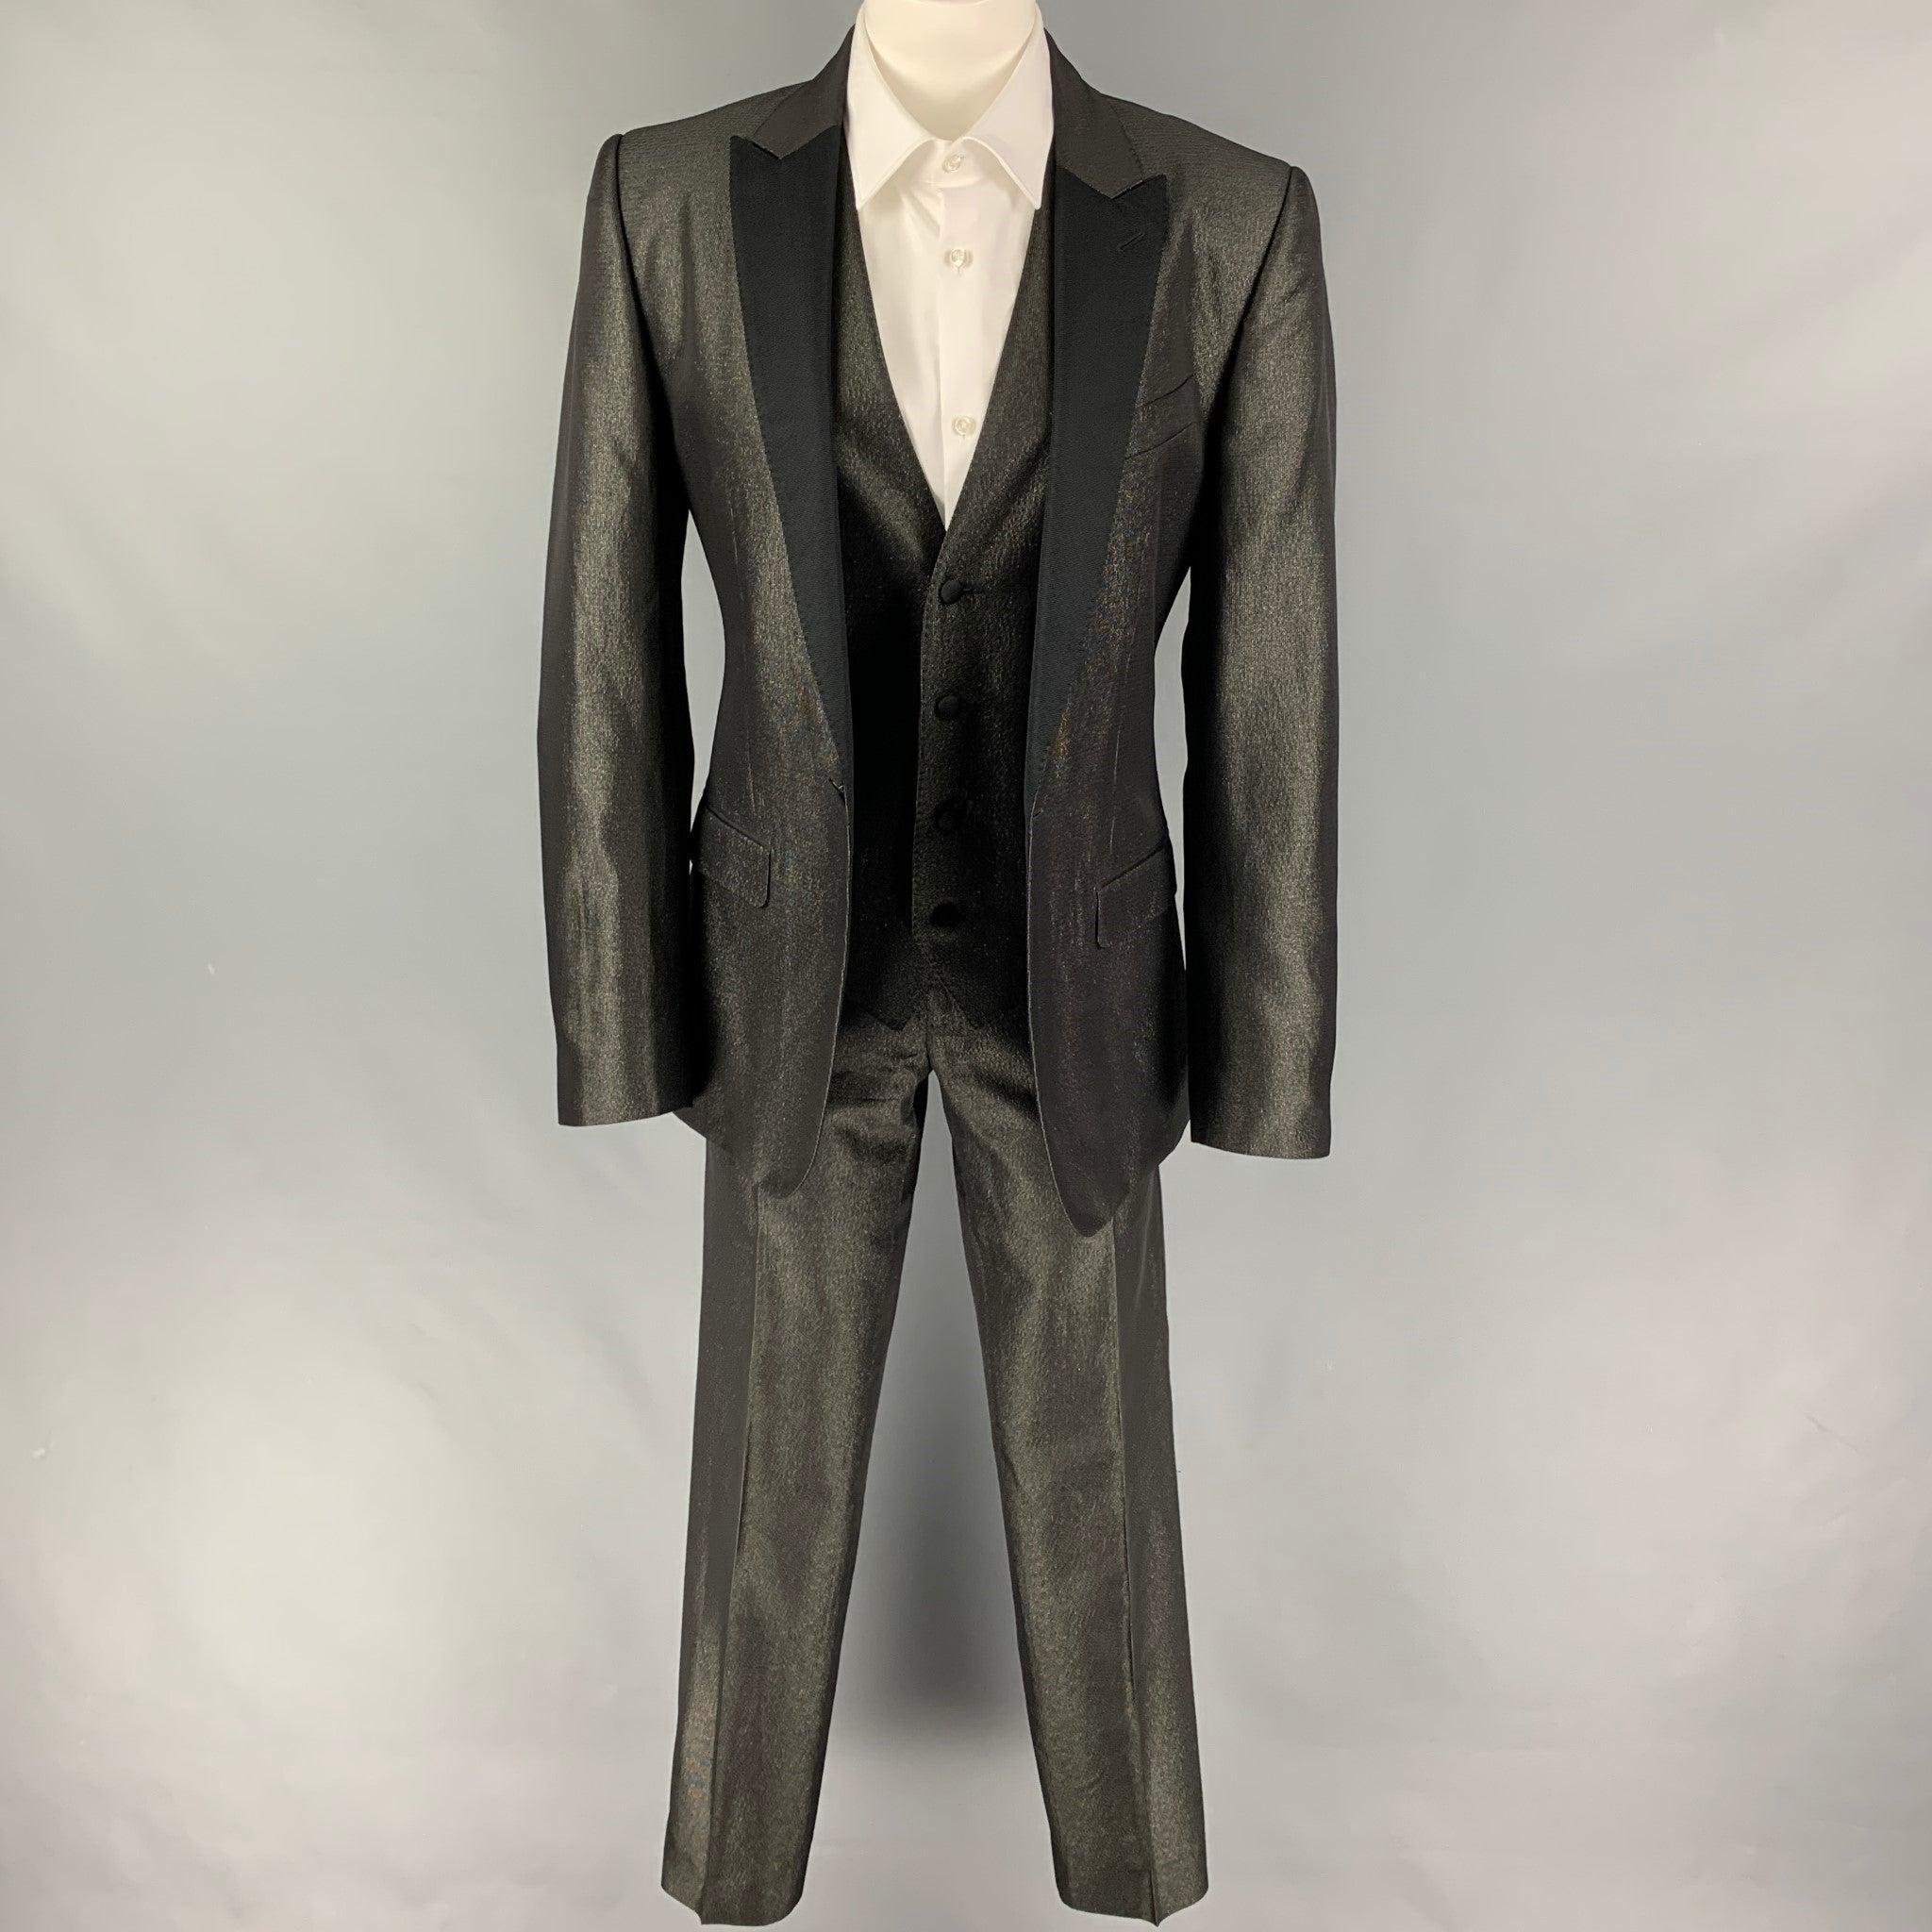 DOLCE & GABBANA Smoking 3 pièces
Le costume se compose d'un mélange d'acétate métallique noir et or avec une doublure complète et comprend un manteau de sport à un seul boutonnage avec un revers en pointe, un gilet assorti et un pantalon à devant